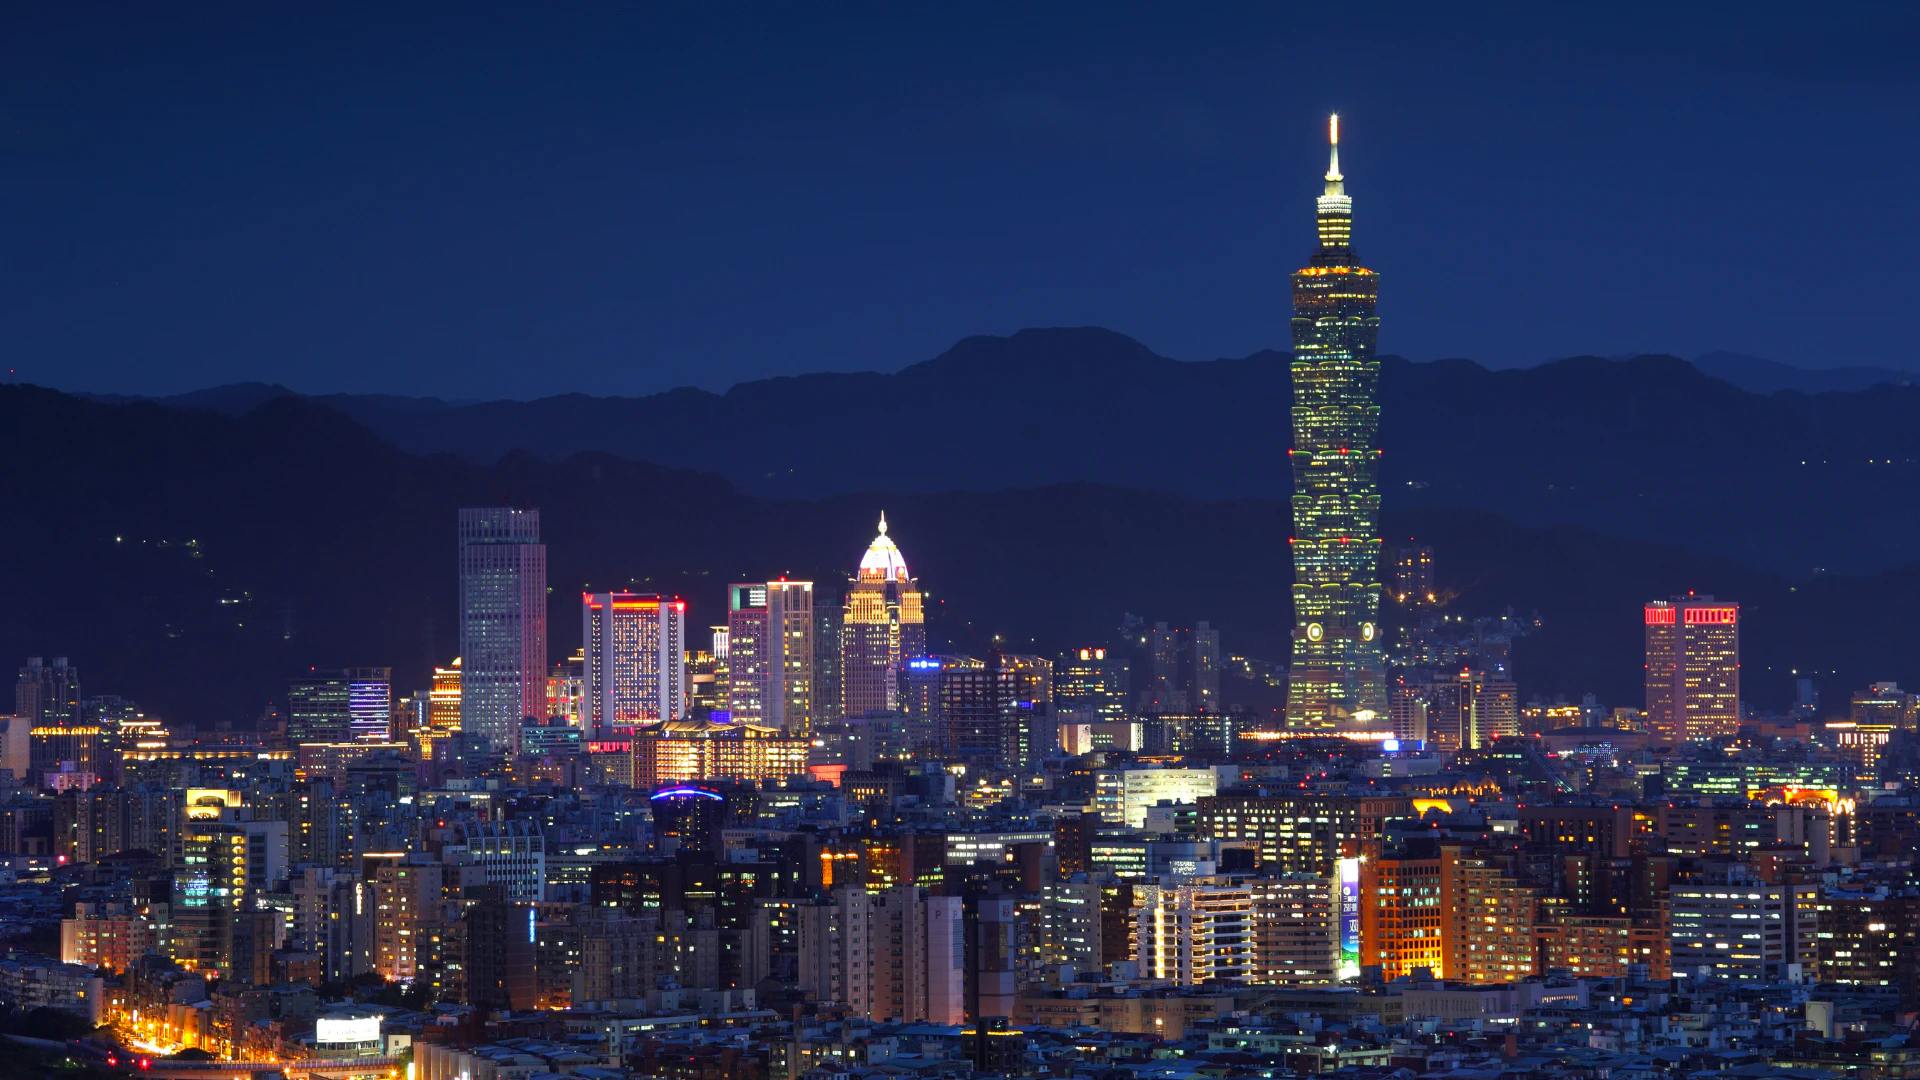 Taipei skyline